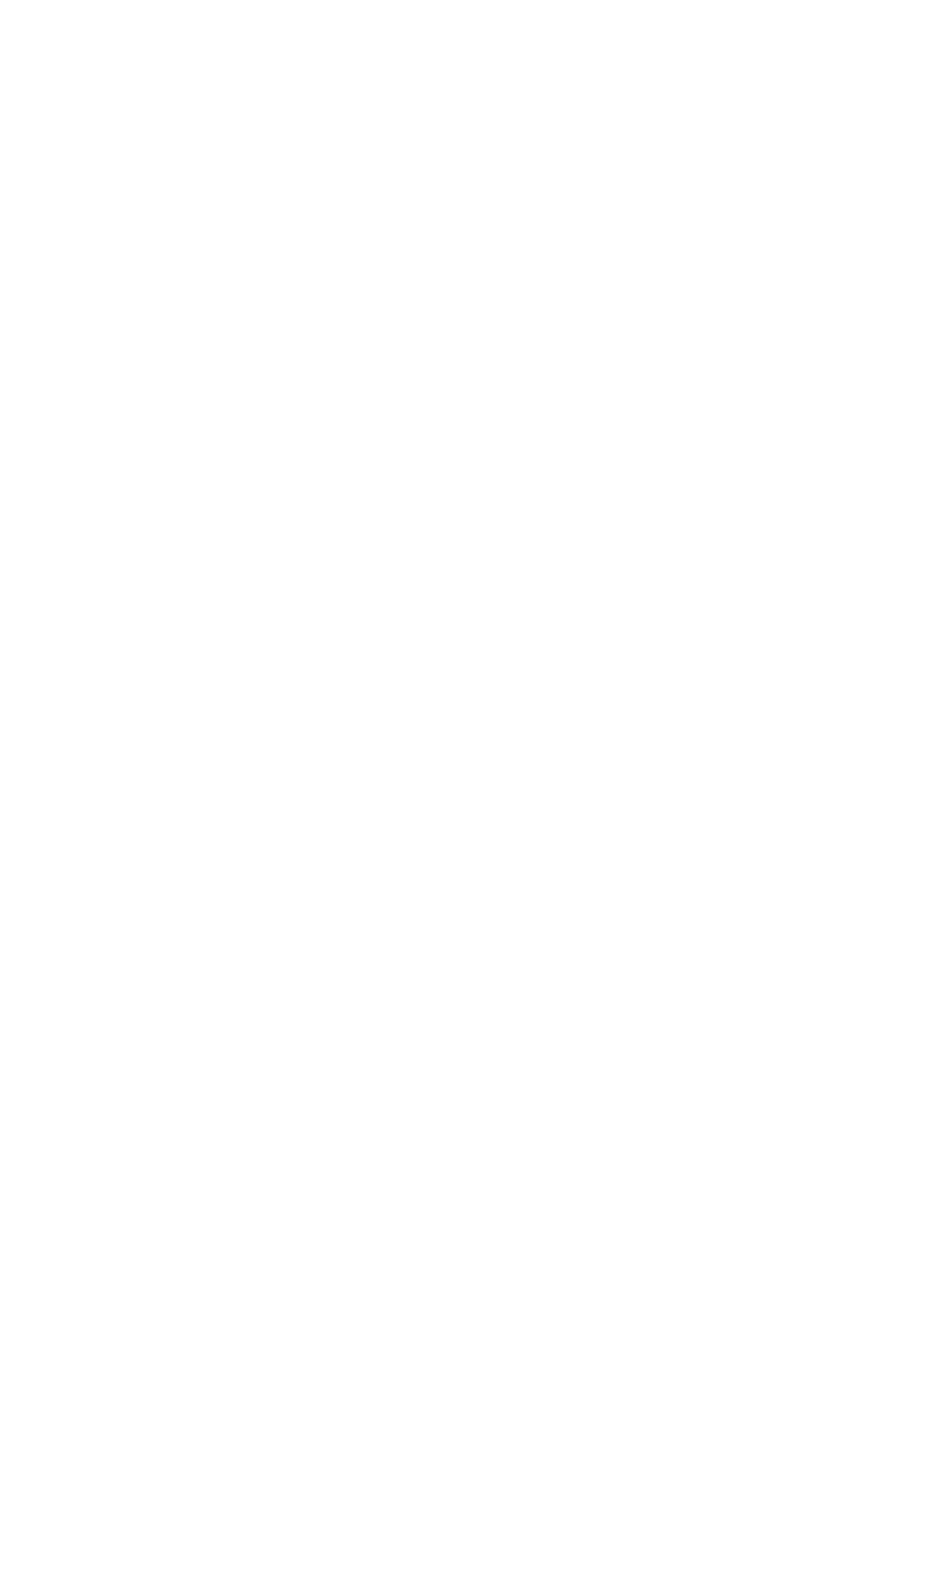 Bill.com logo pour fonds sombres (PNG transparent)